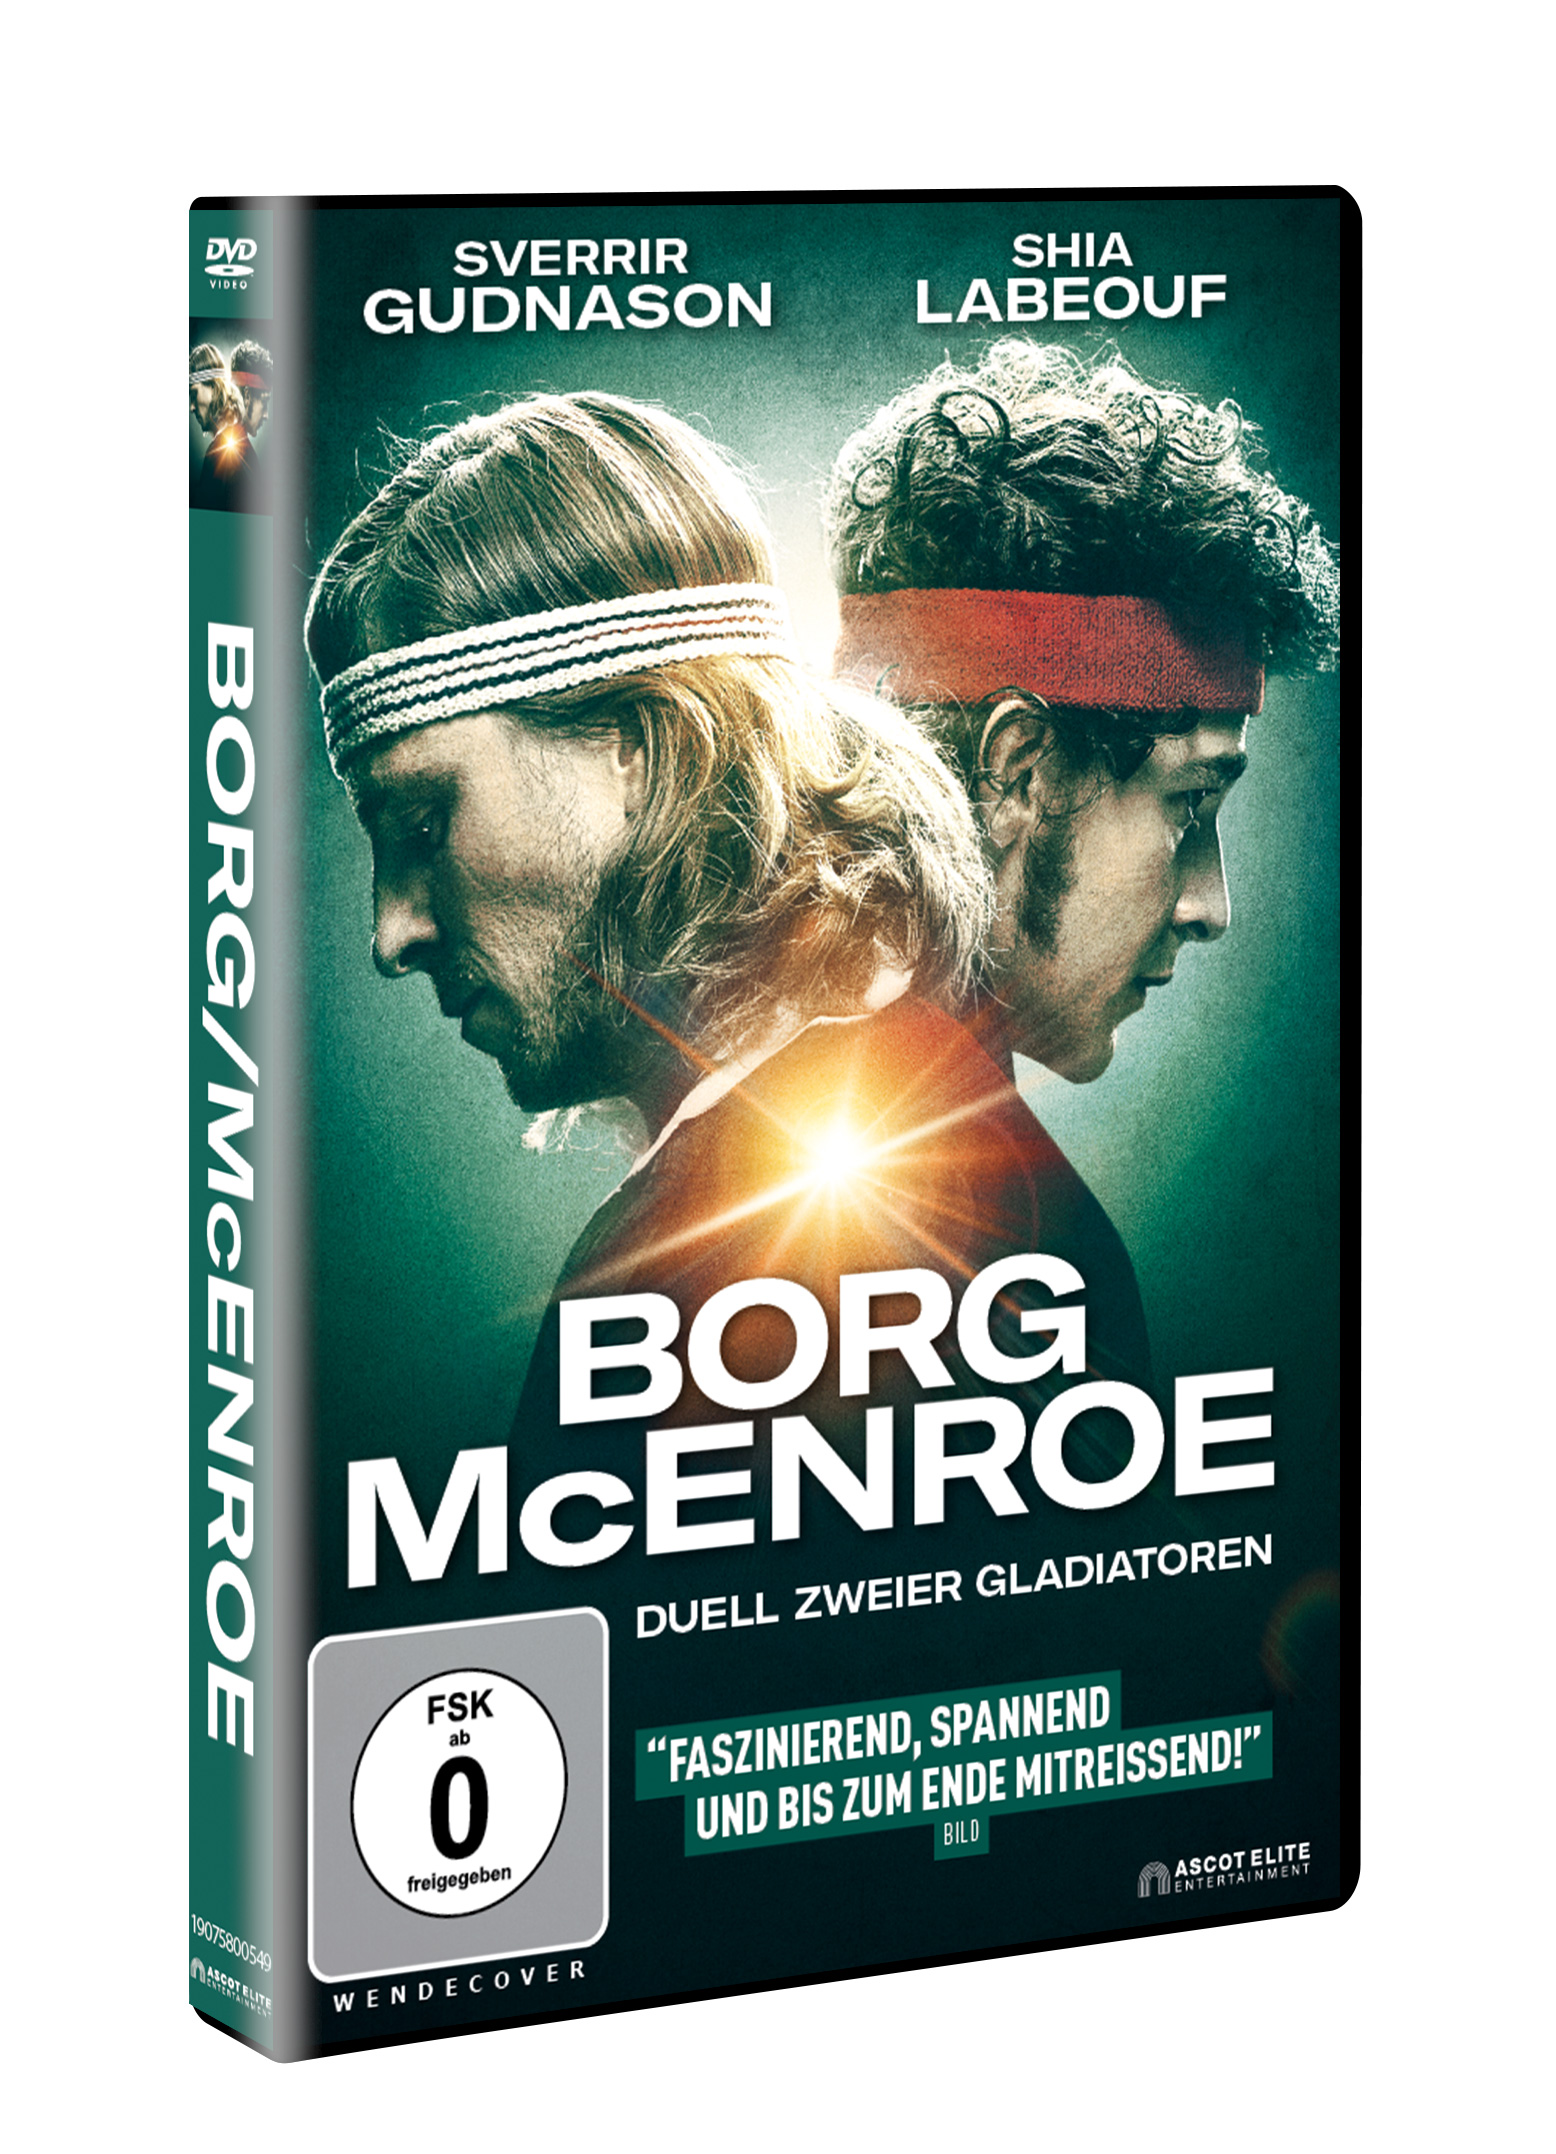 Borg vs. McEnroe - DVD Duell zweier Gladiatoren